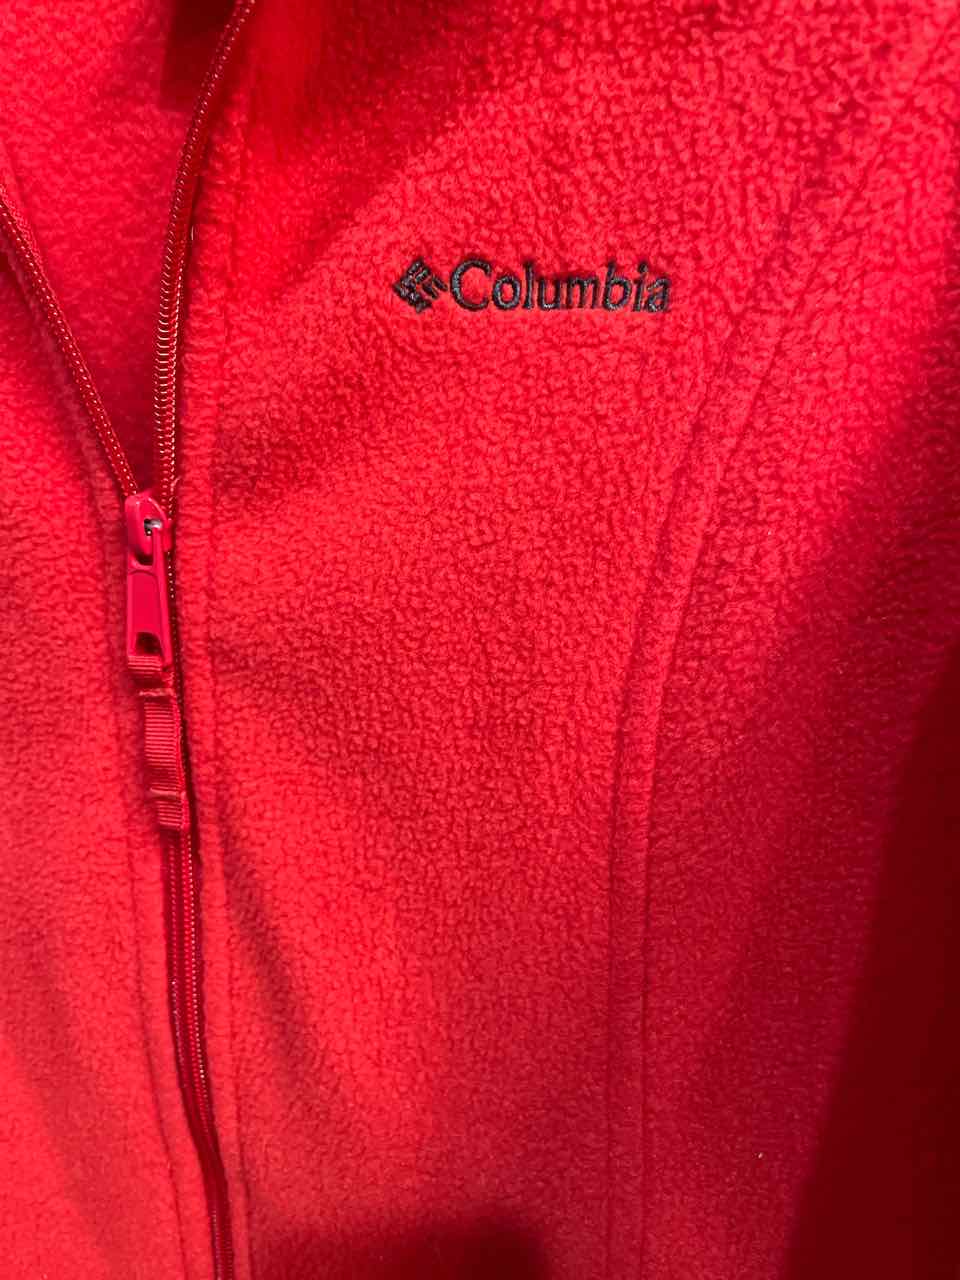 S - Columbia Jacket